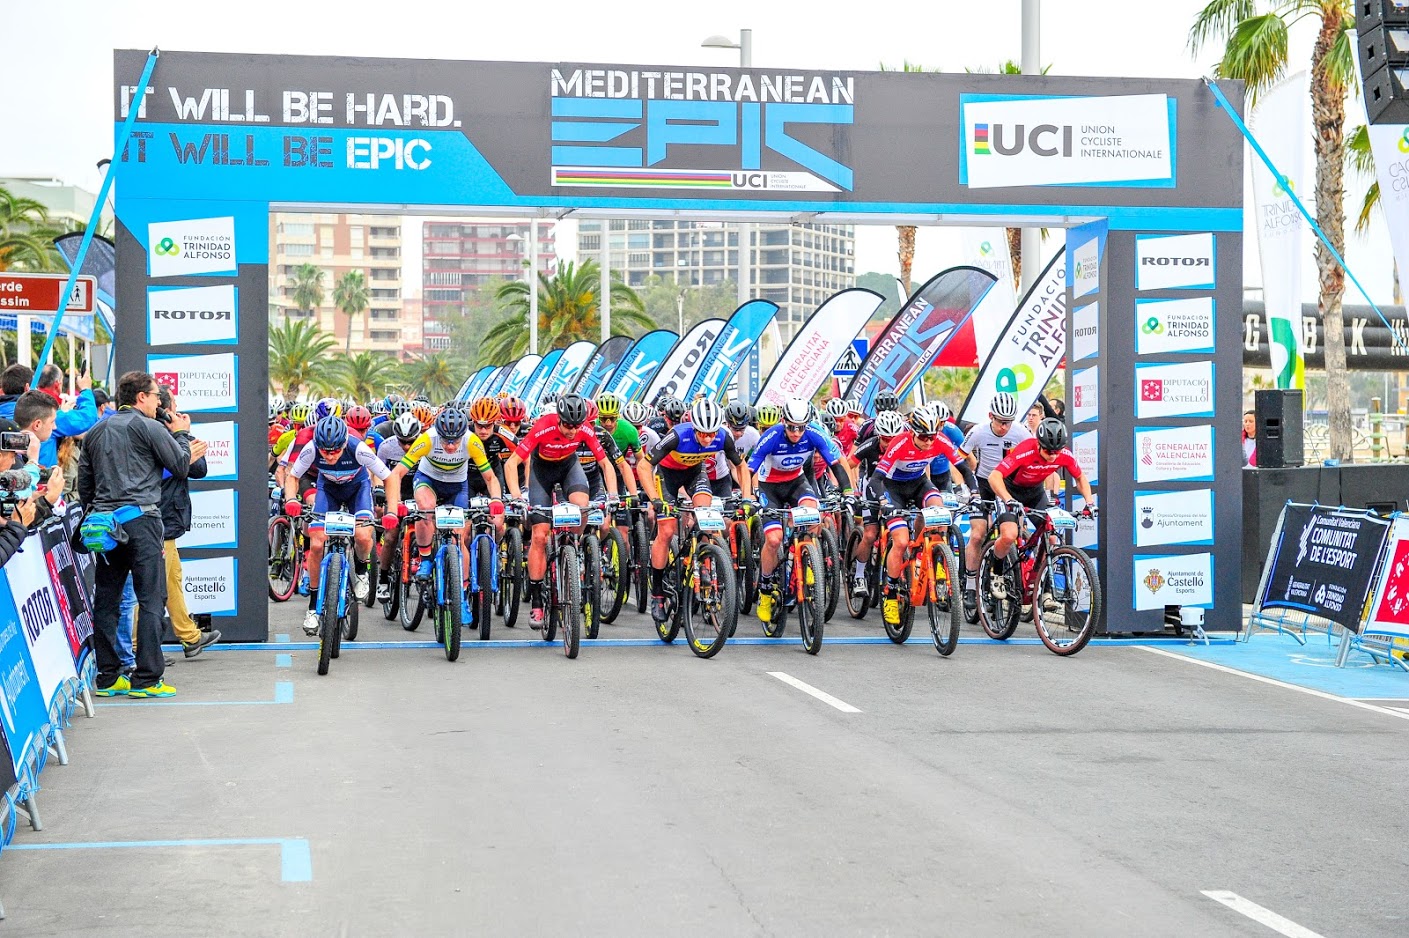 La Mediterranean Epic estrenará categoría de oro en 2021 y se posiciona como una de las competiciones de mountain bike más importantes del mundo